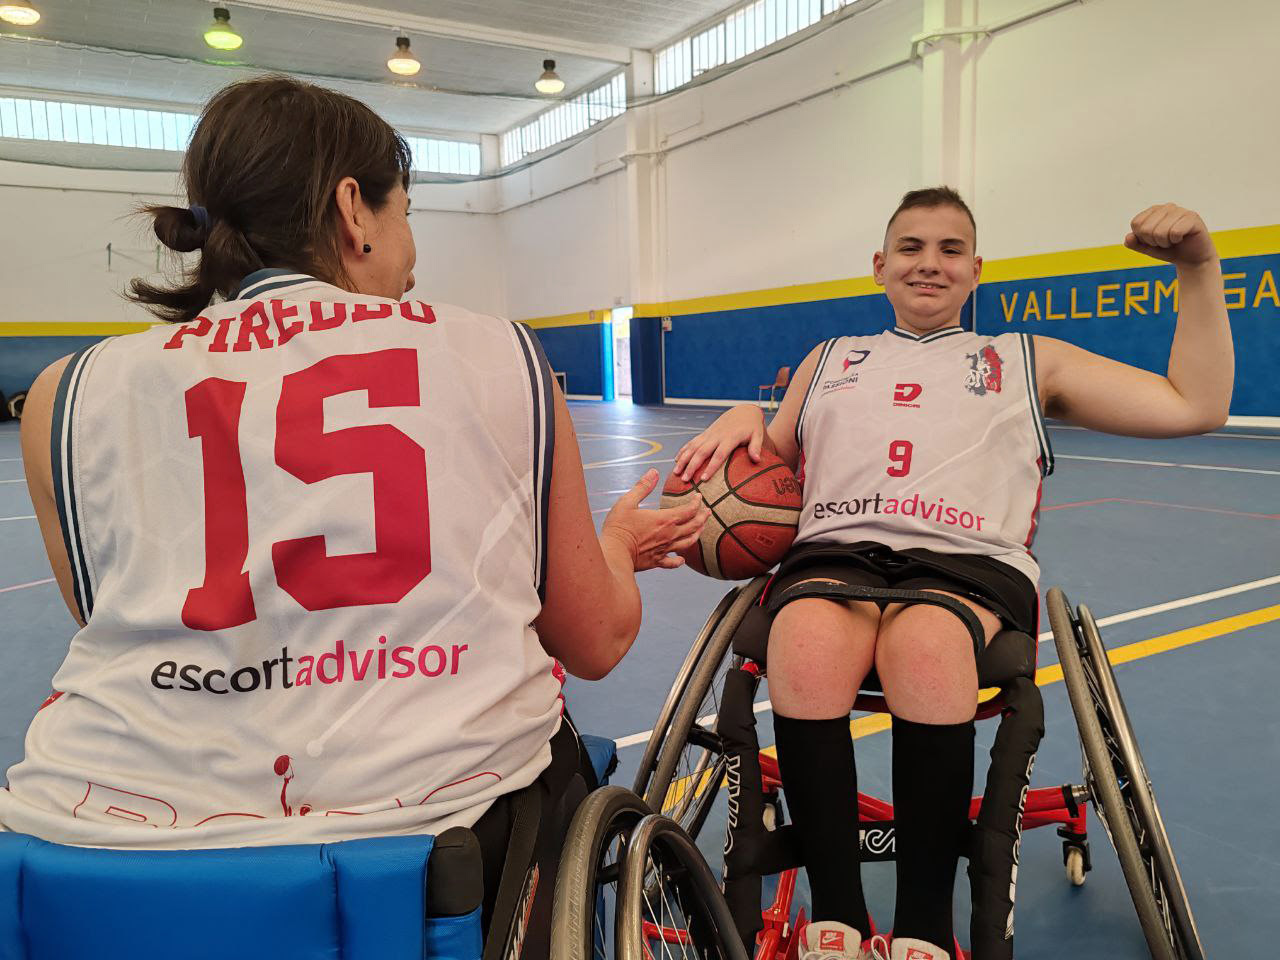 Sito di escort promuove raccolta fondi per Basket Disabili Onlus